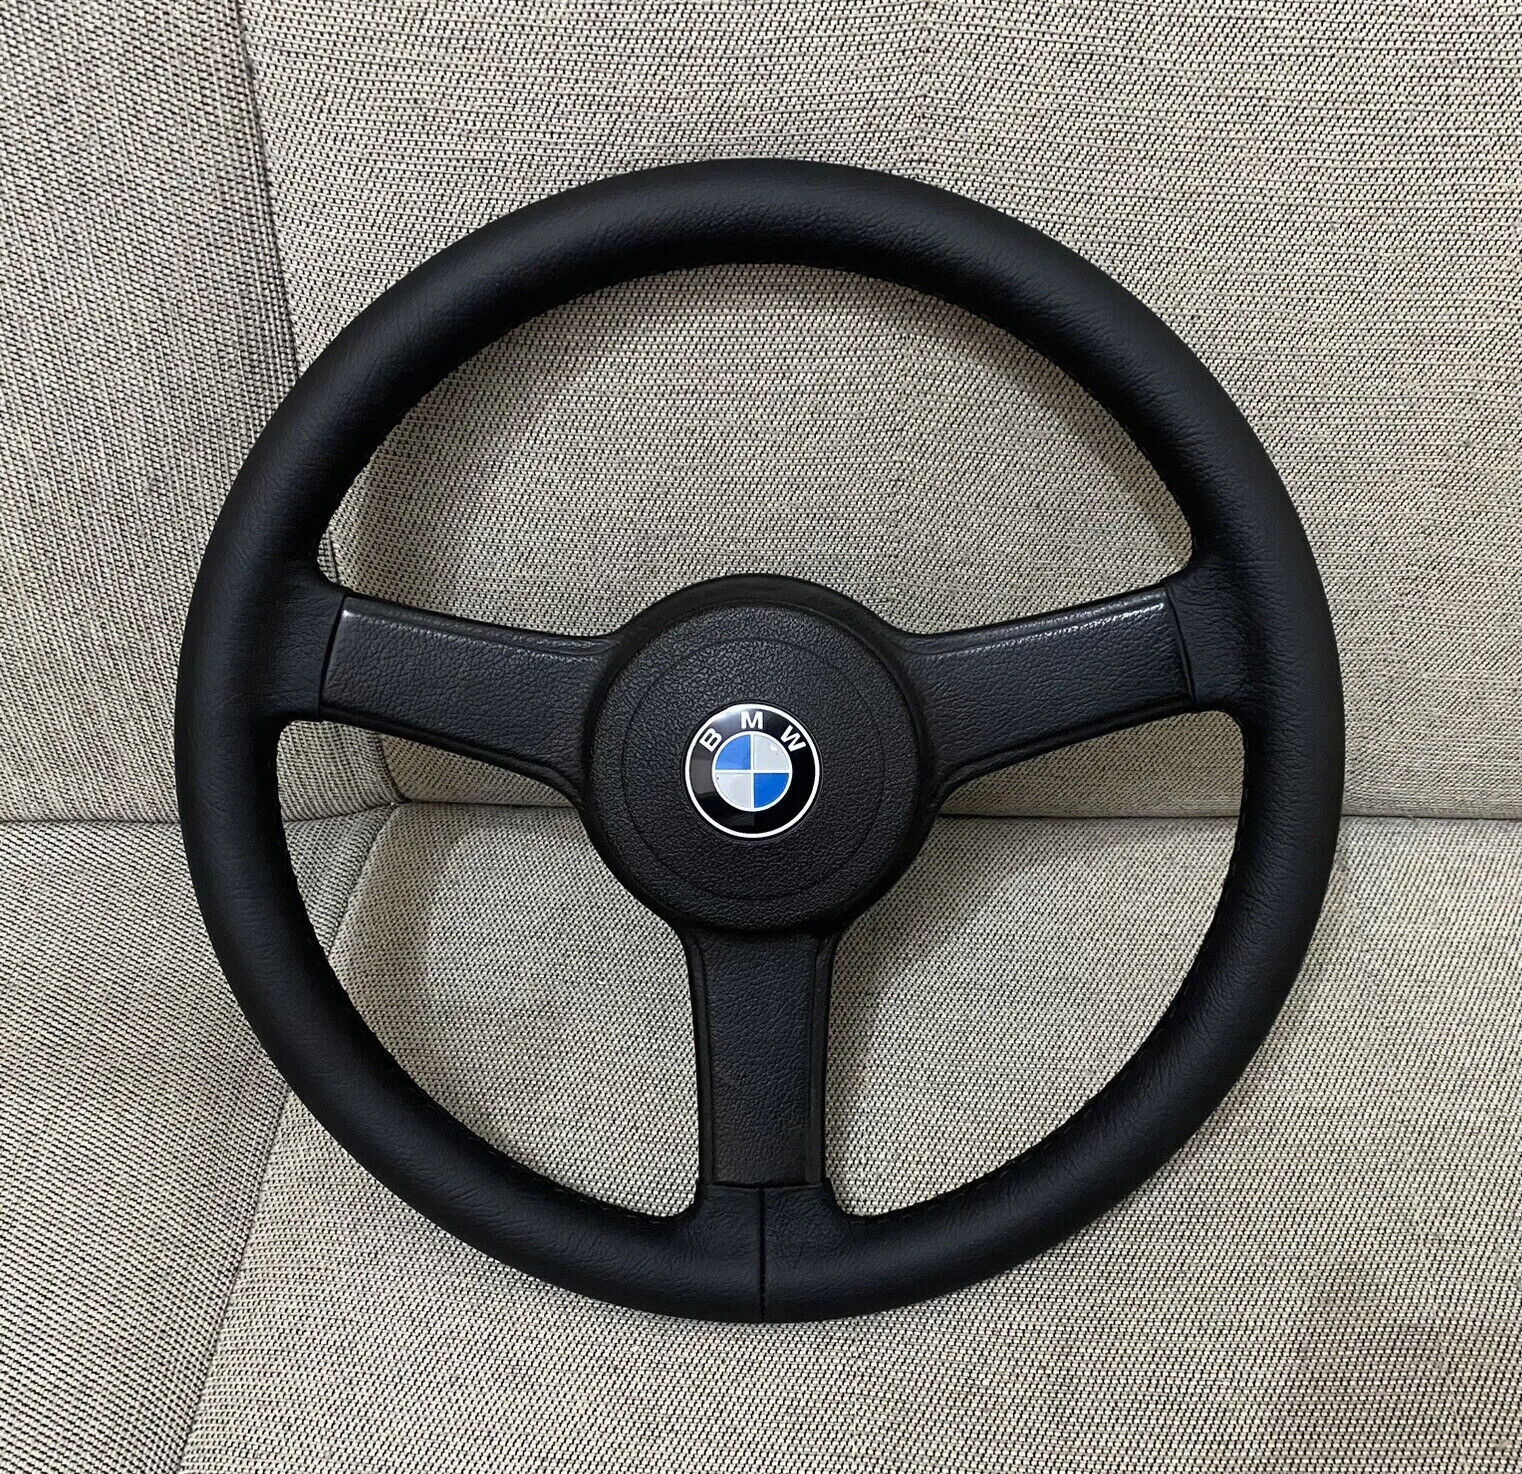 BMW E21 steering wheel 3 spoke sport EURO 320iS 323i E9 E12 E23 E24 E28 2002 E3